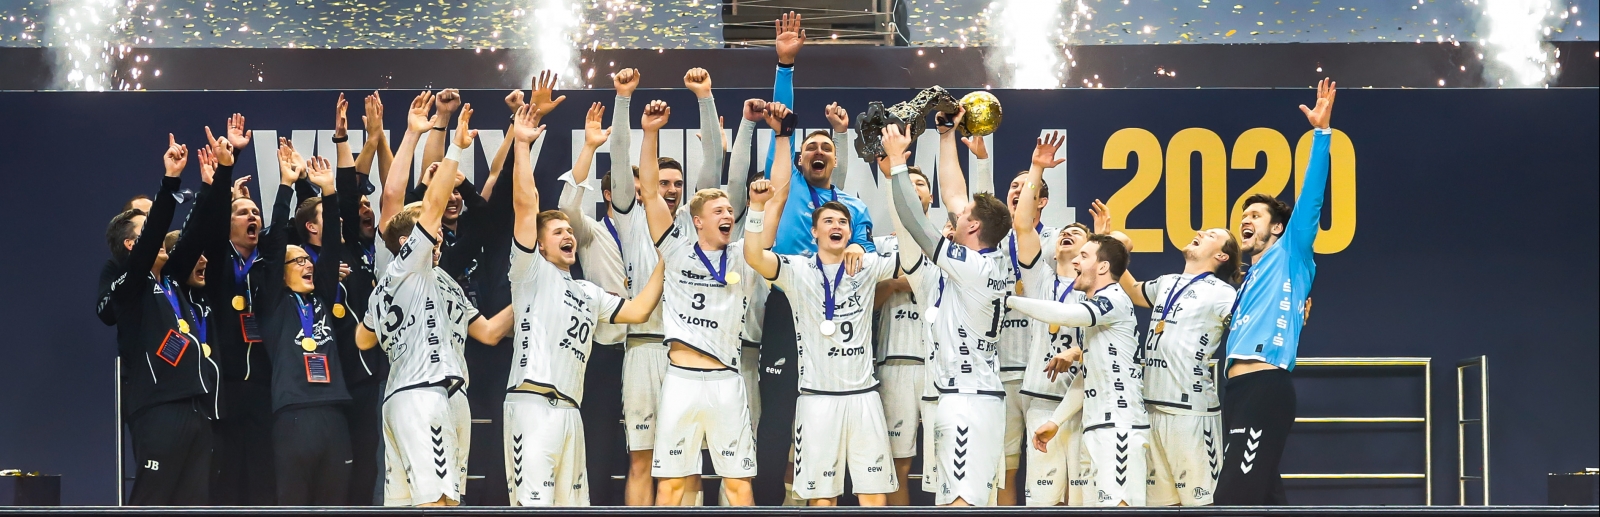 Europas Handball-Elite zu Gast in Köln Sportland.NRW